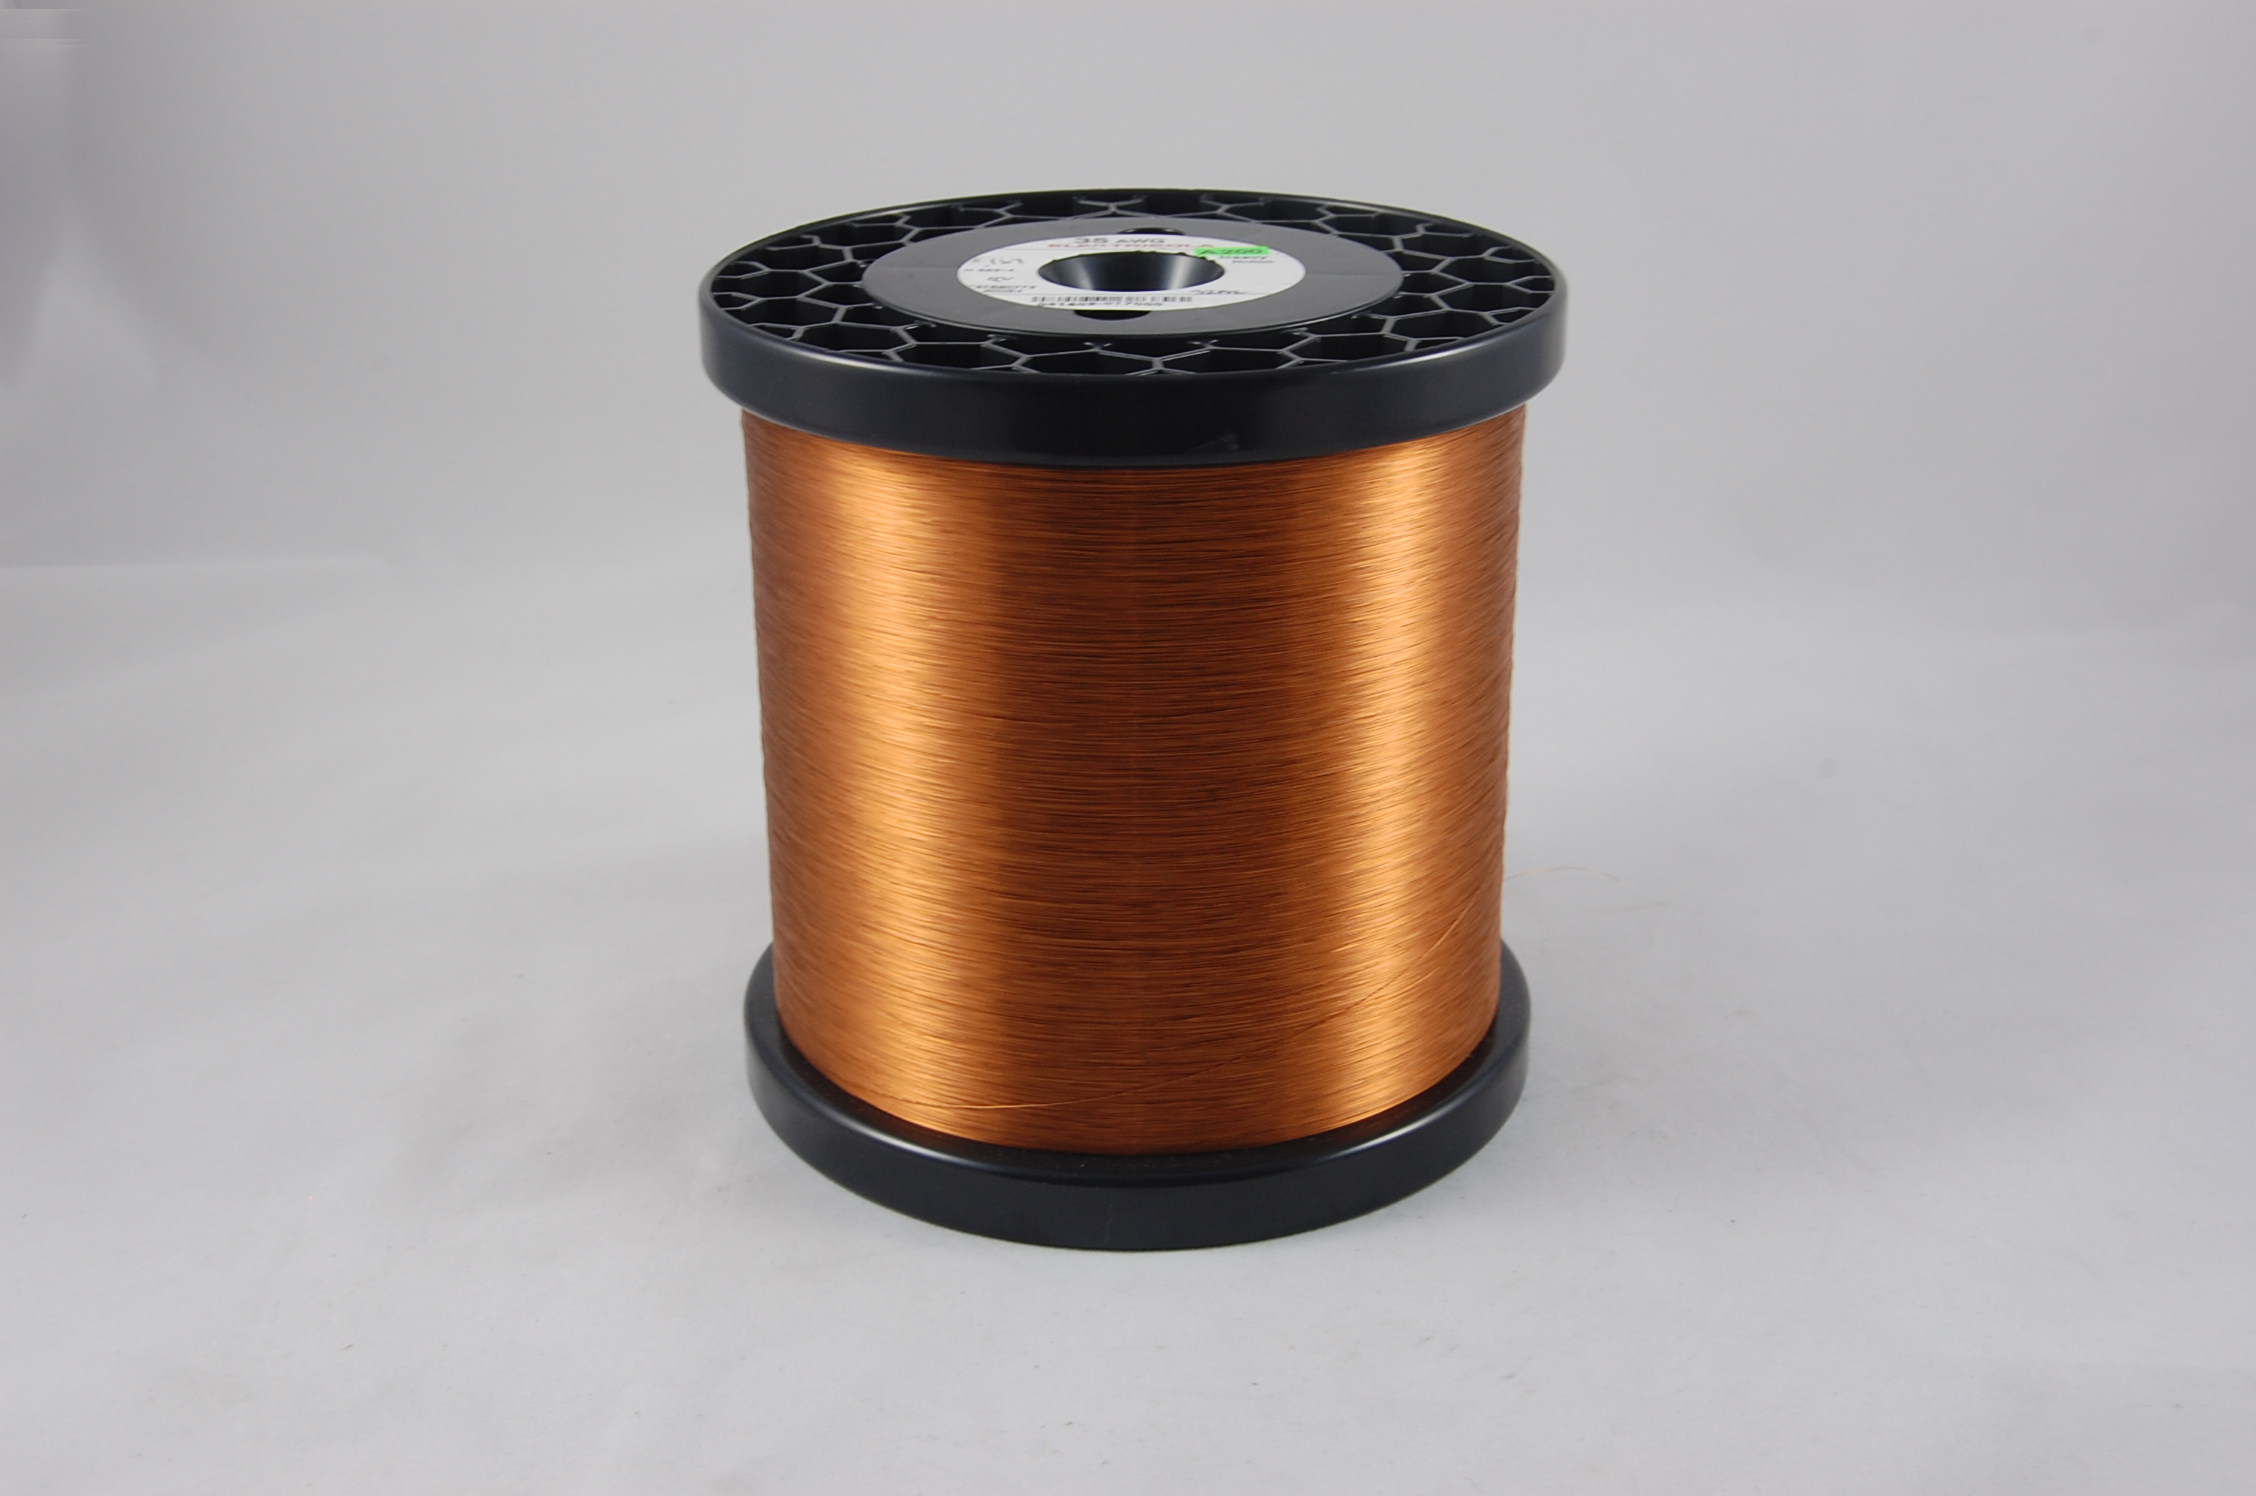 #43 Heavy Amidester 200 Round MW 74 Copper Magnet Wire 200°C, copper,  14 LB 6" x 6" spool (average wght.)